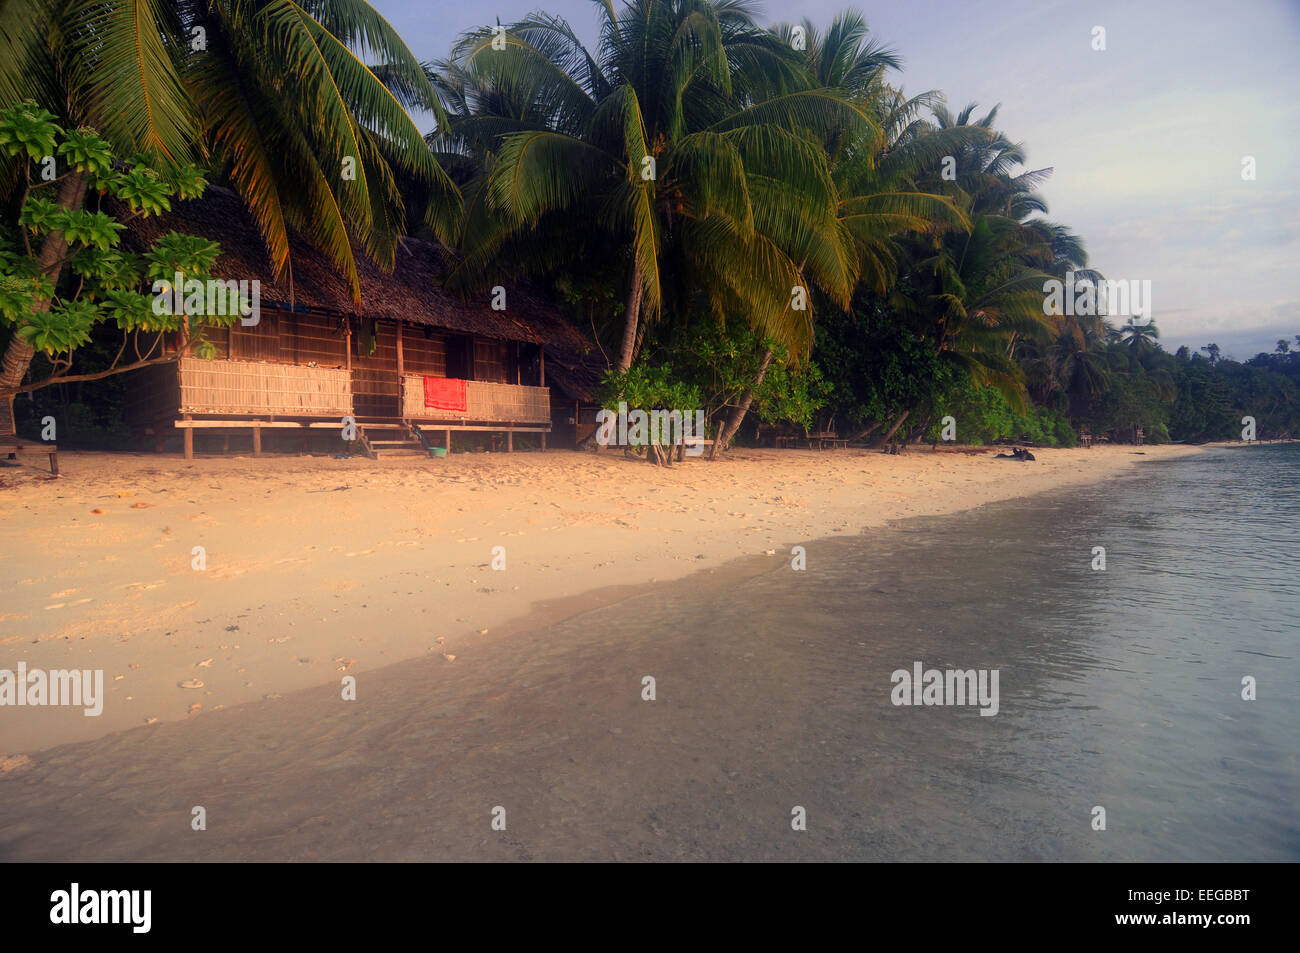 À l'aube pacifique beach homestay, GAM, l'île de Raja Ampat, la province de Papouasie, Indonésie Banque D'Images